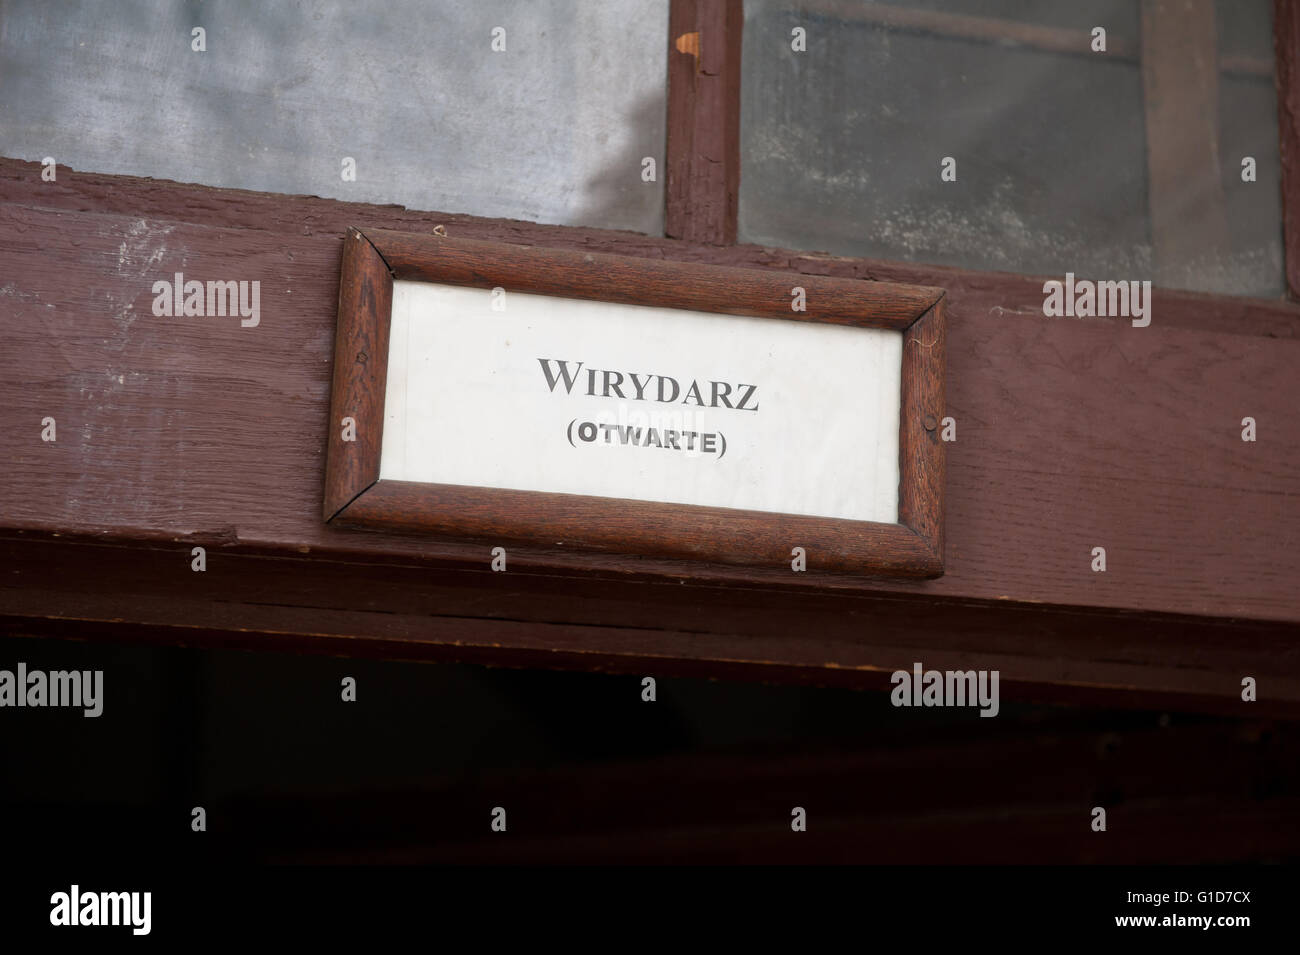 Aprire un quadrangolo informazioni sopra le porte, ingresso al chiostro cortile con giardino, polacco Wirydarz, Sagrato della Chiesa in Polonia. Foto Stock